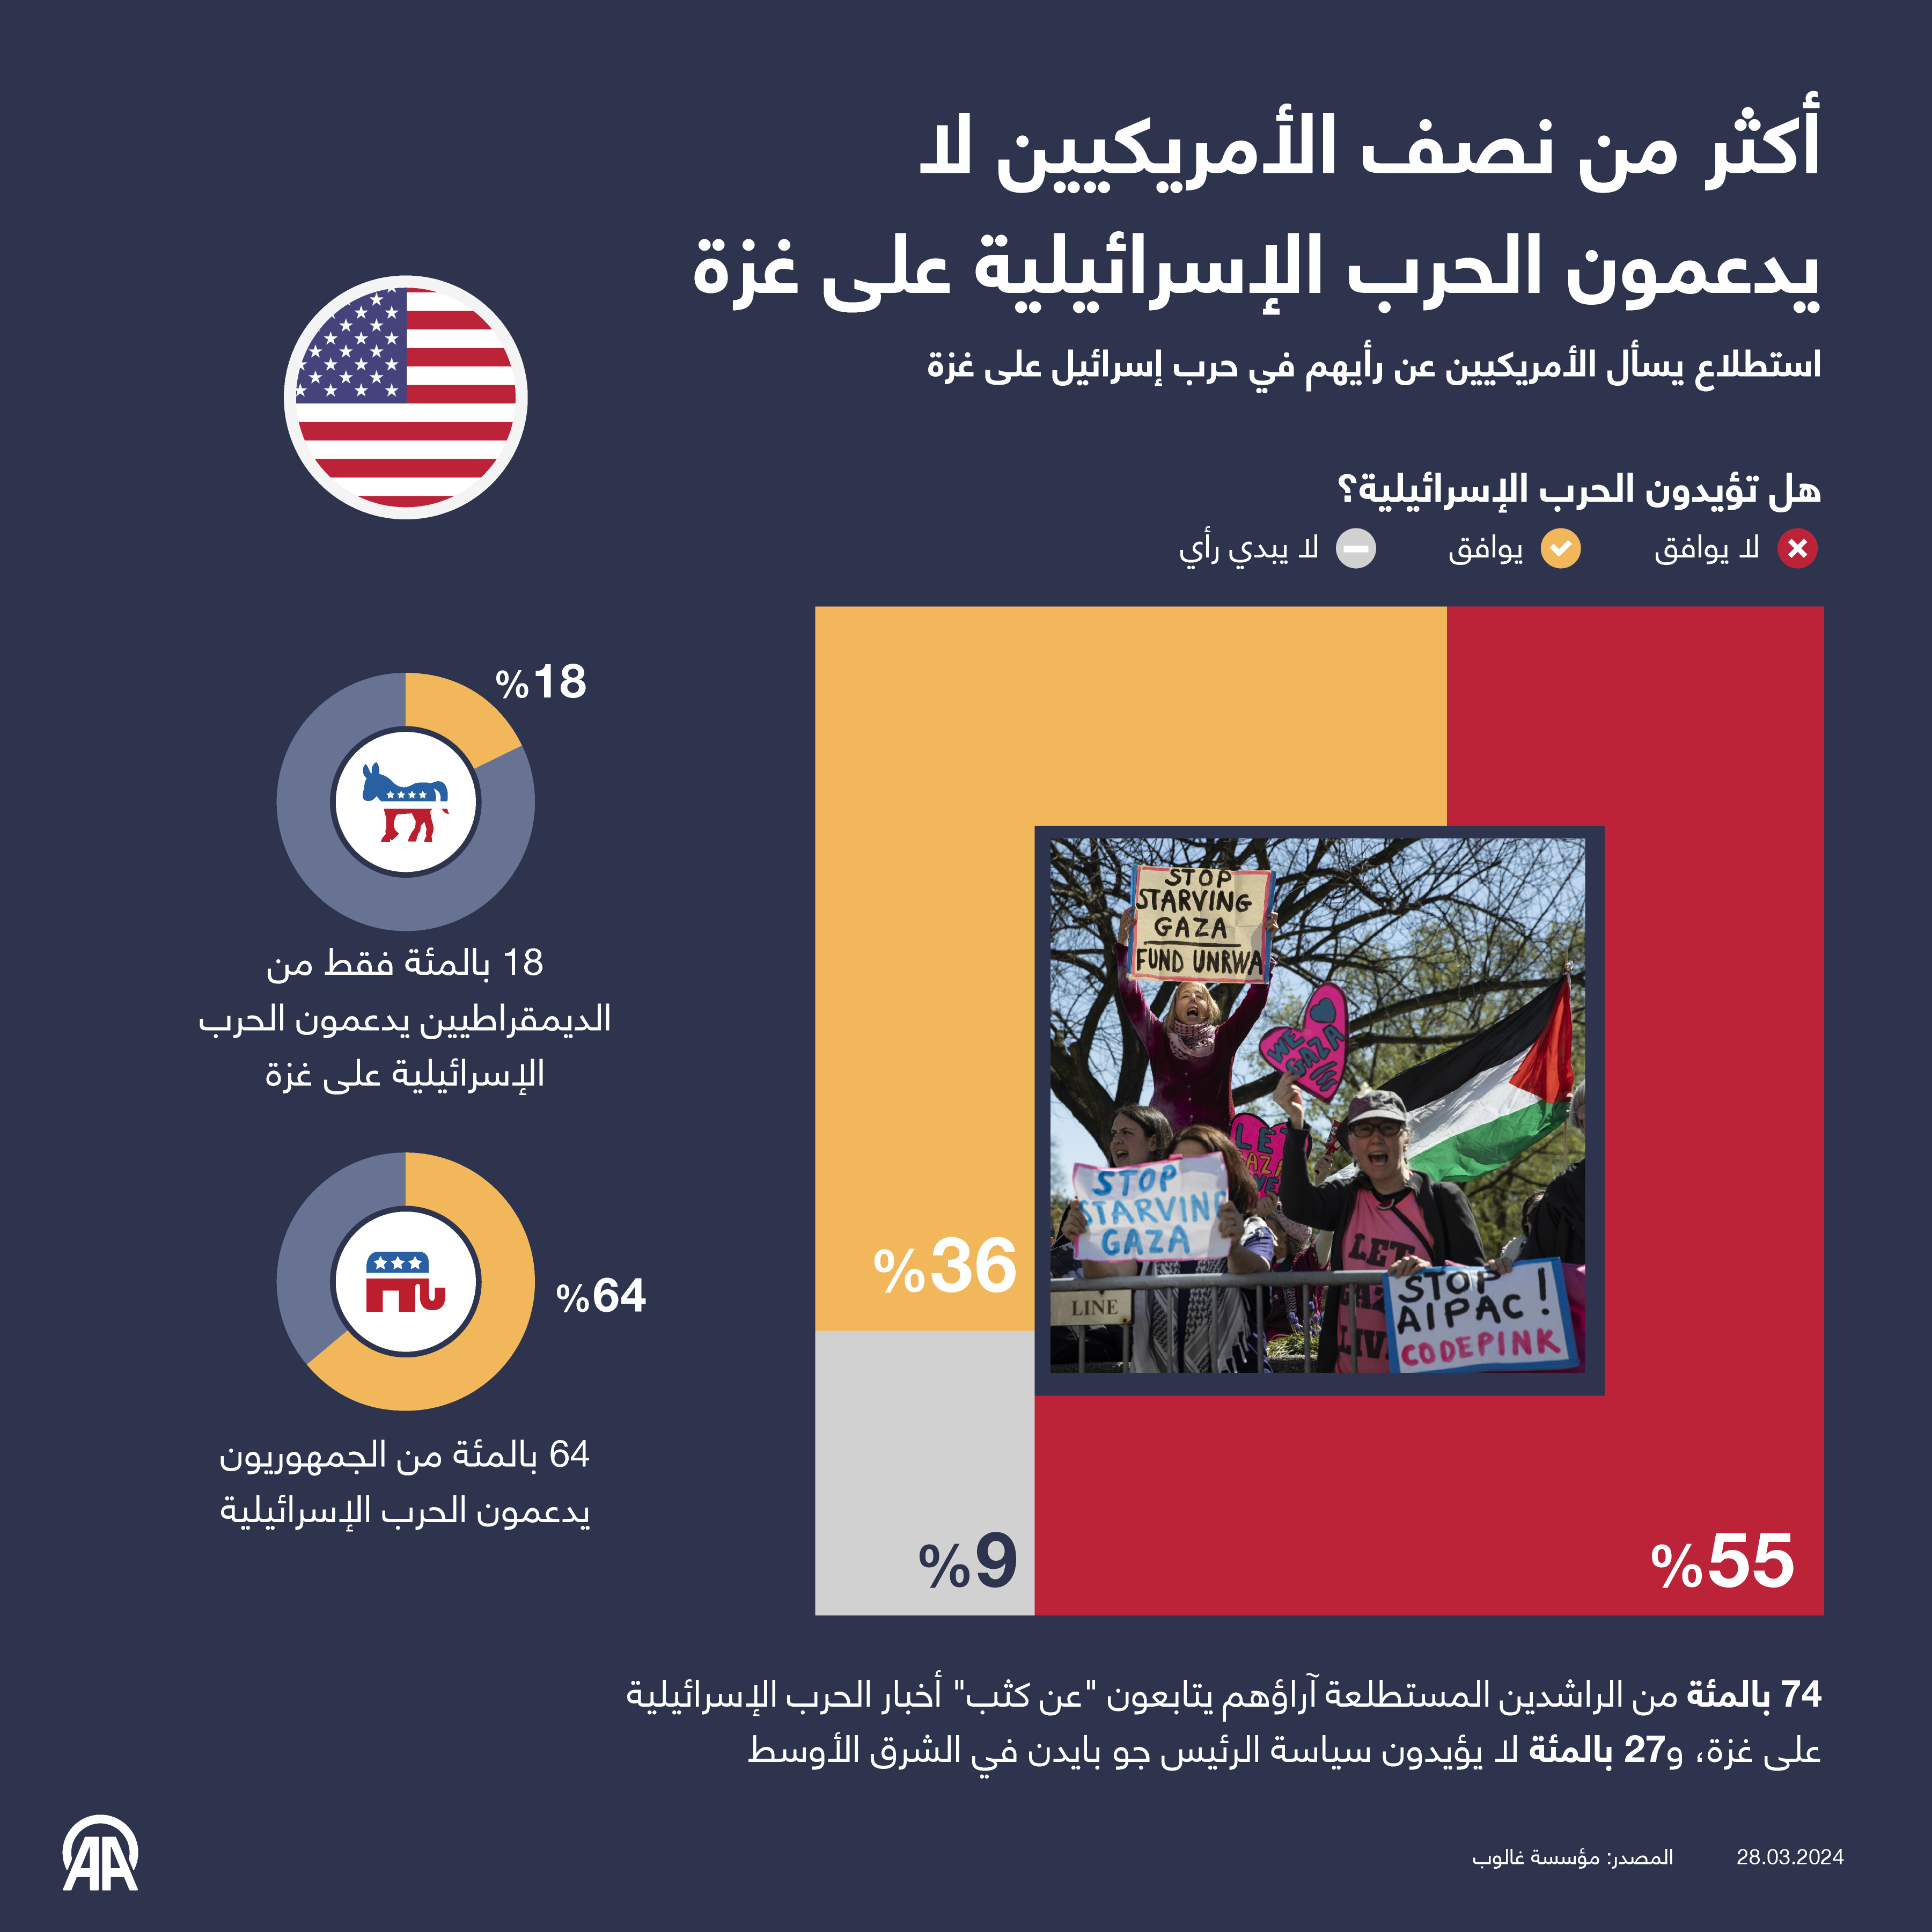 أكثر من نصف الأمريكيين لا يدعمون الحرب الإسرائيلية على غزة